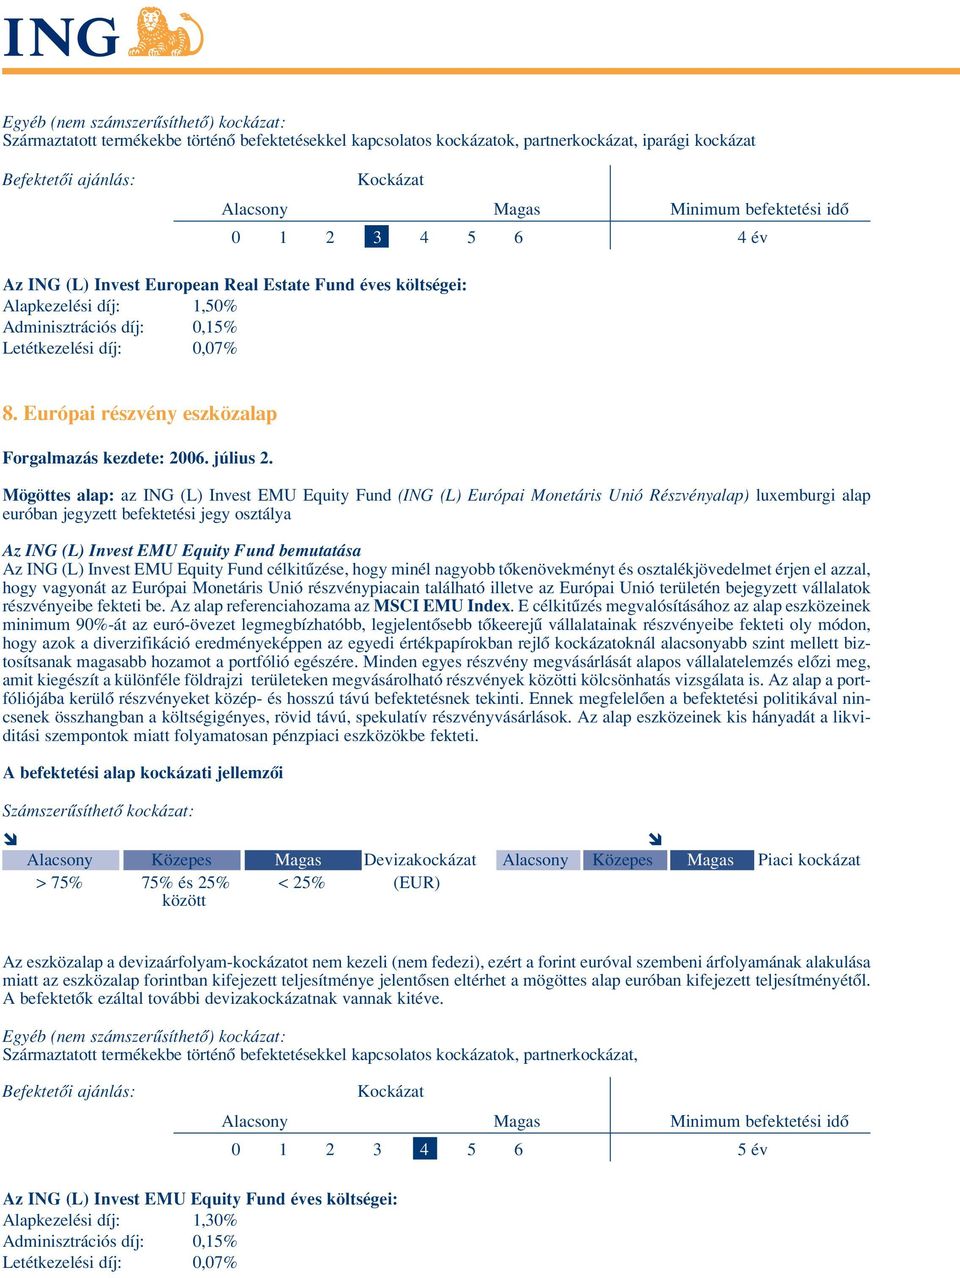 Európai részvény eszközalap Mögöttes alap: az ING (L) Invest EMU Equity Fund (ING (L) Európai Monetáris Unió Részvényalap) luxemburgi alap euróban jegyzett befektetési jegy osztálya Az ING (L) Invest